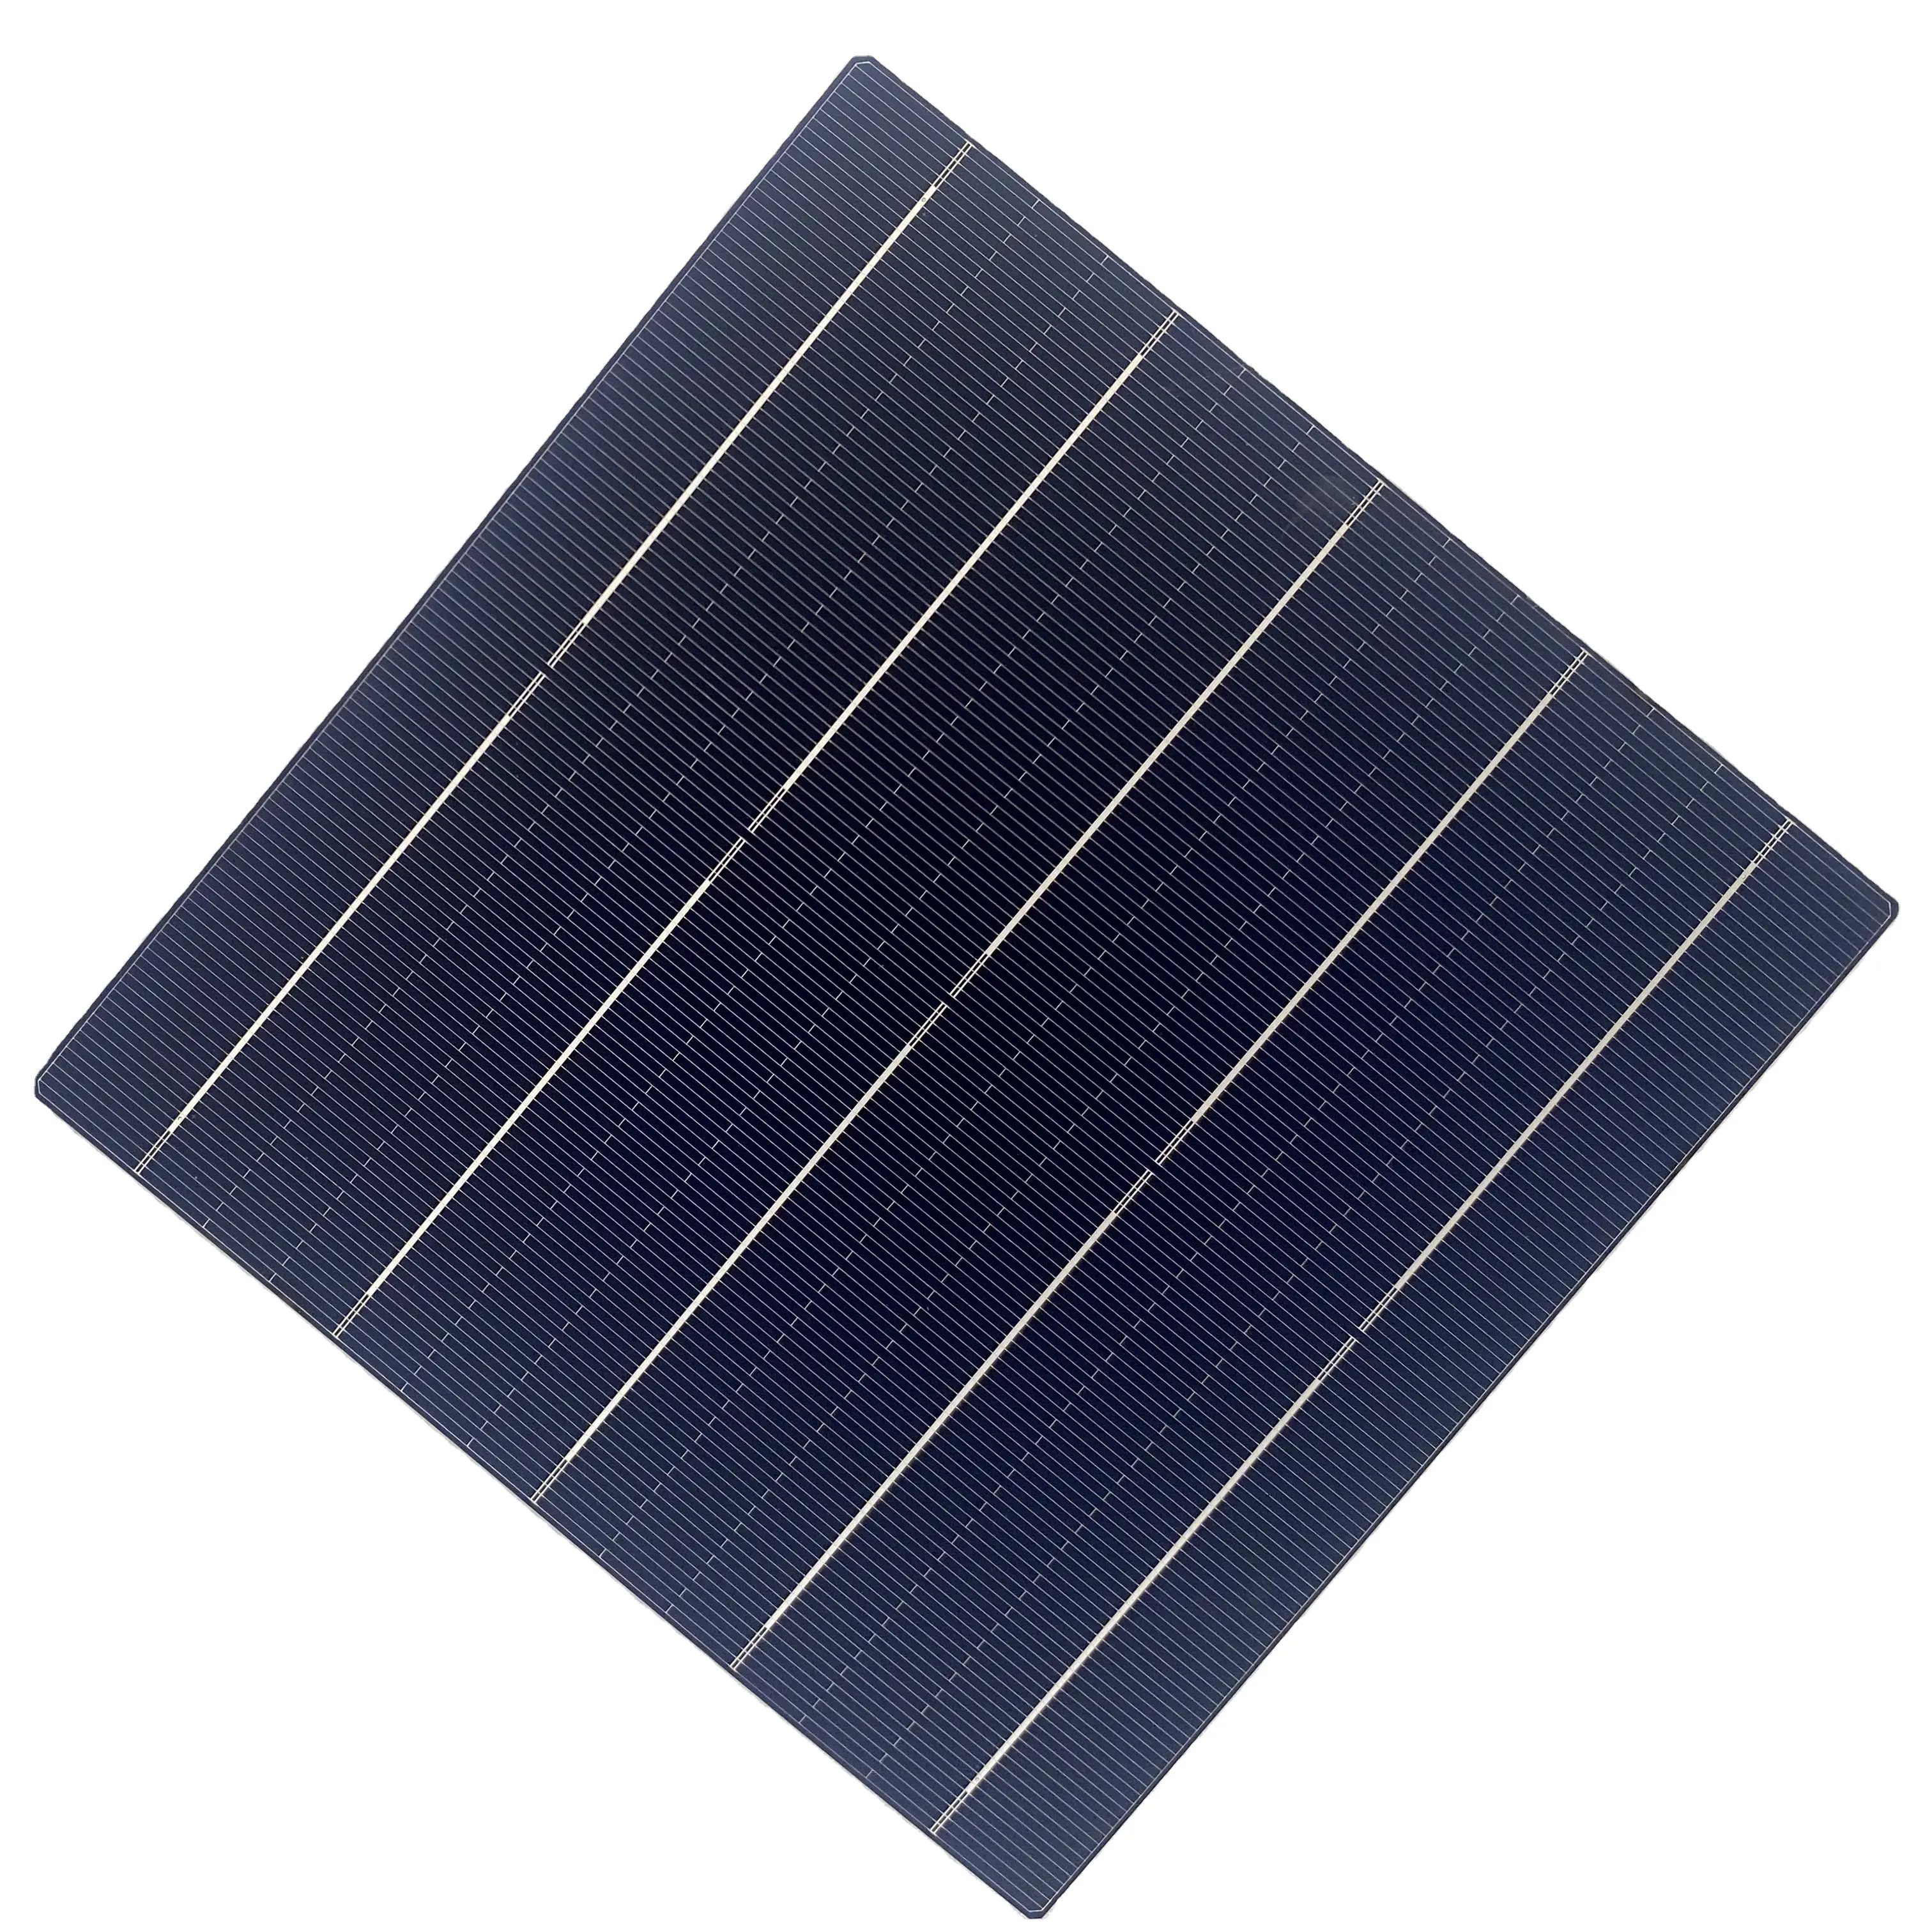 MONO TOPCON PERC China Personalização 210*210mm painel fotovoltaico célula economia de energia wafer produtos equipamentos de energia solar